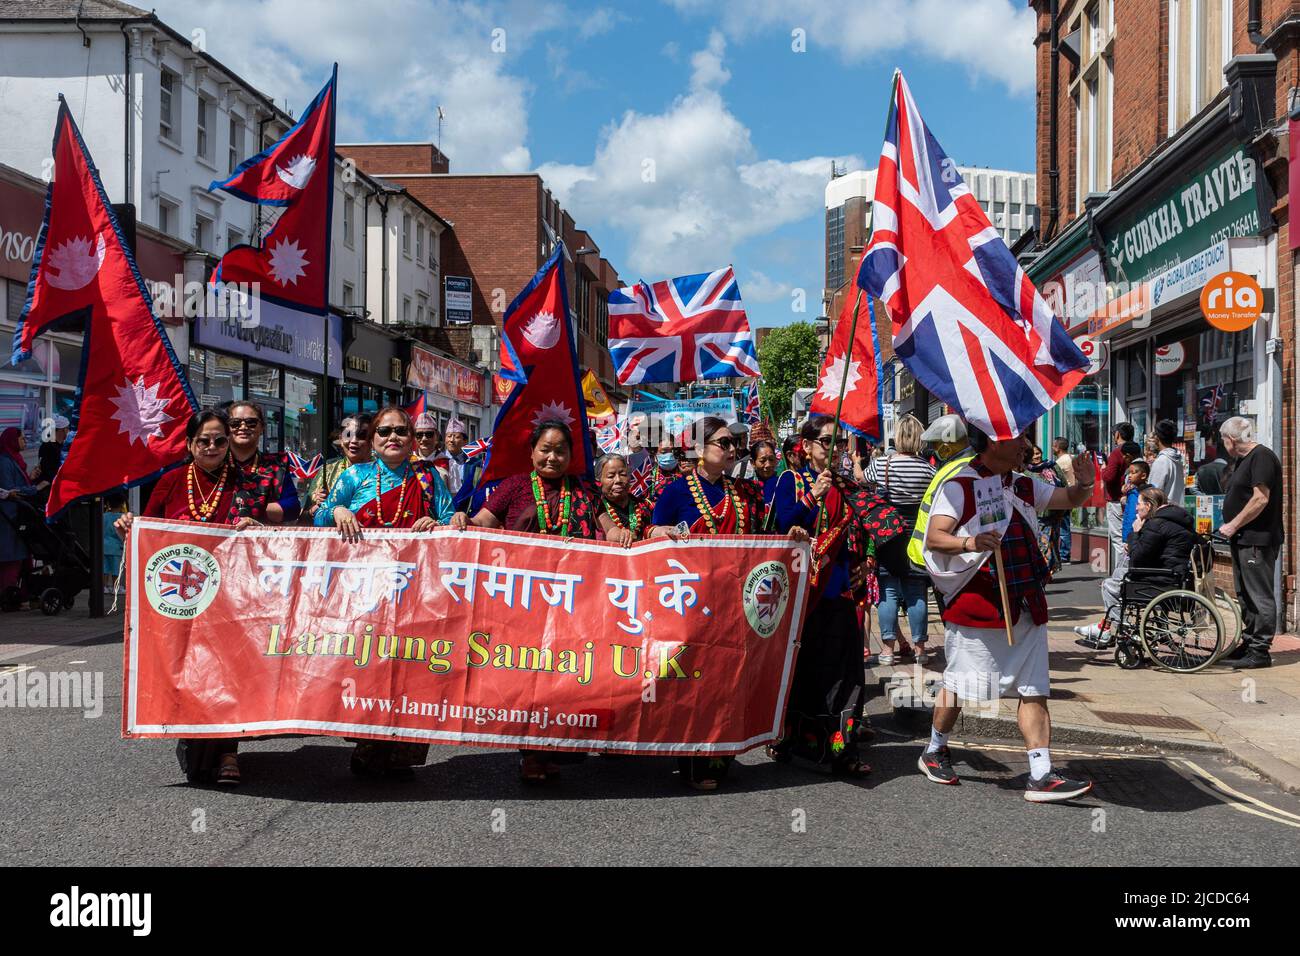 Lamjung Samaj UK, une organisation pour le peuple népalais, dans le Grand Parade à Victoria Day, un événement annuel à Aldershot, Hampshire, Angleterre, Royaume-Uni Banque D'Images